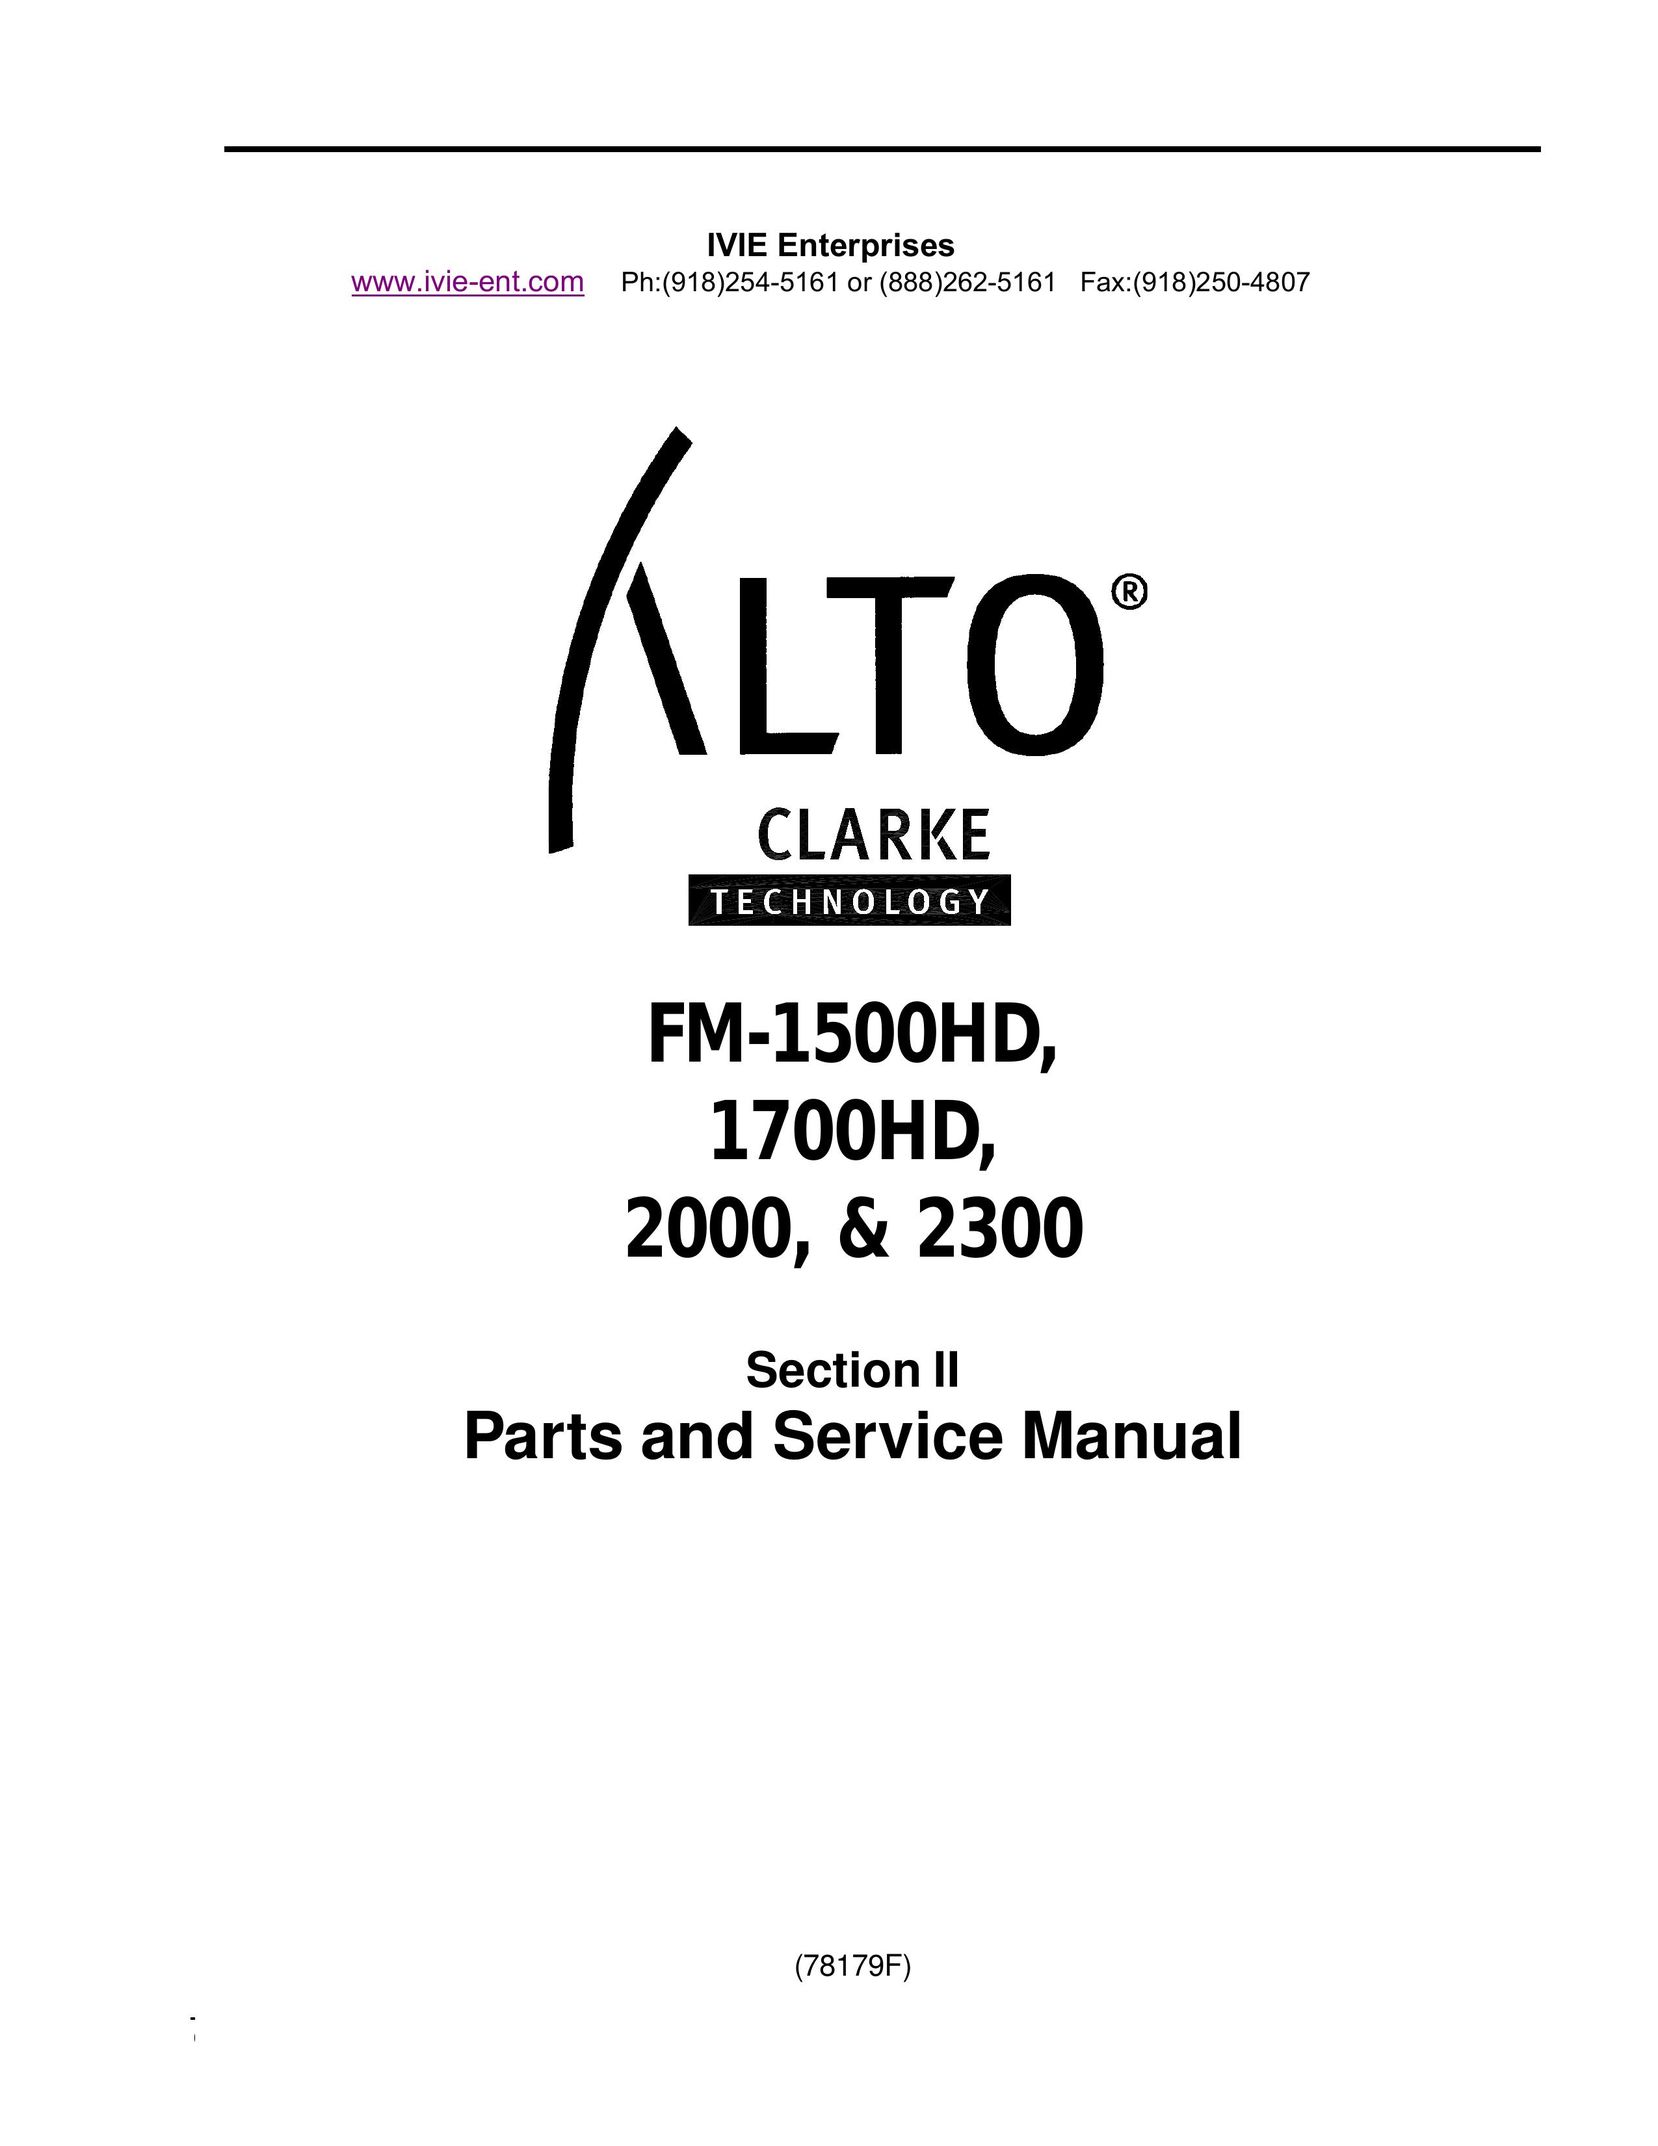 Clarke 1700HD Sander User Manual